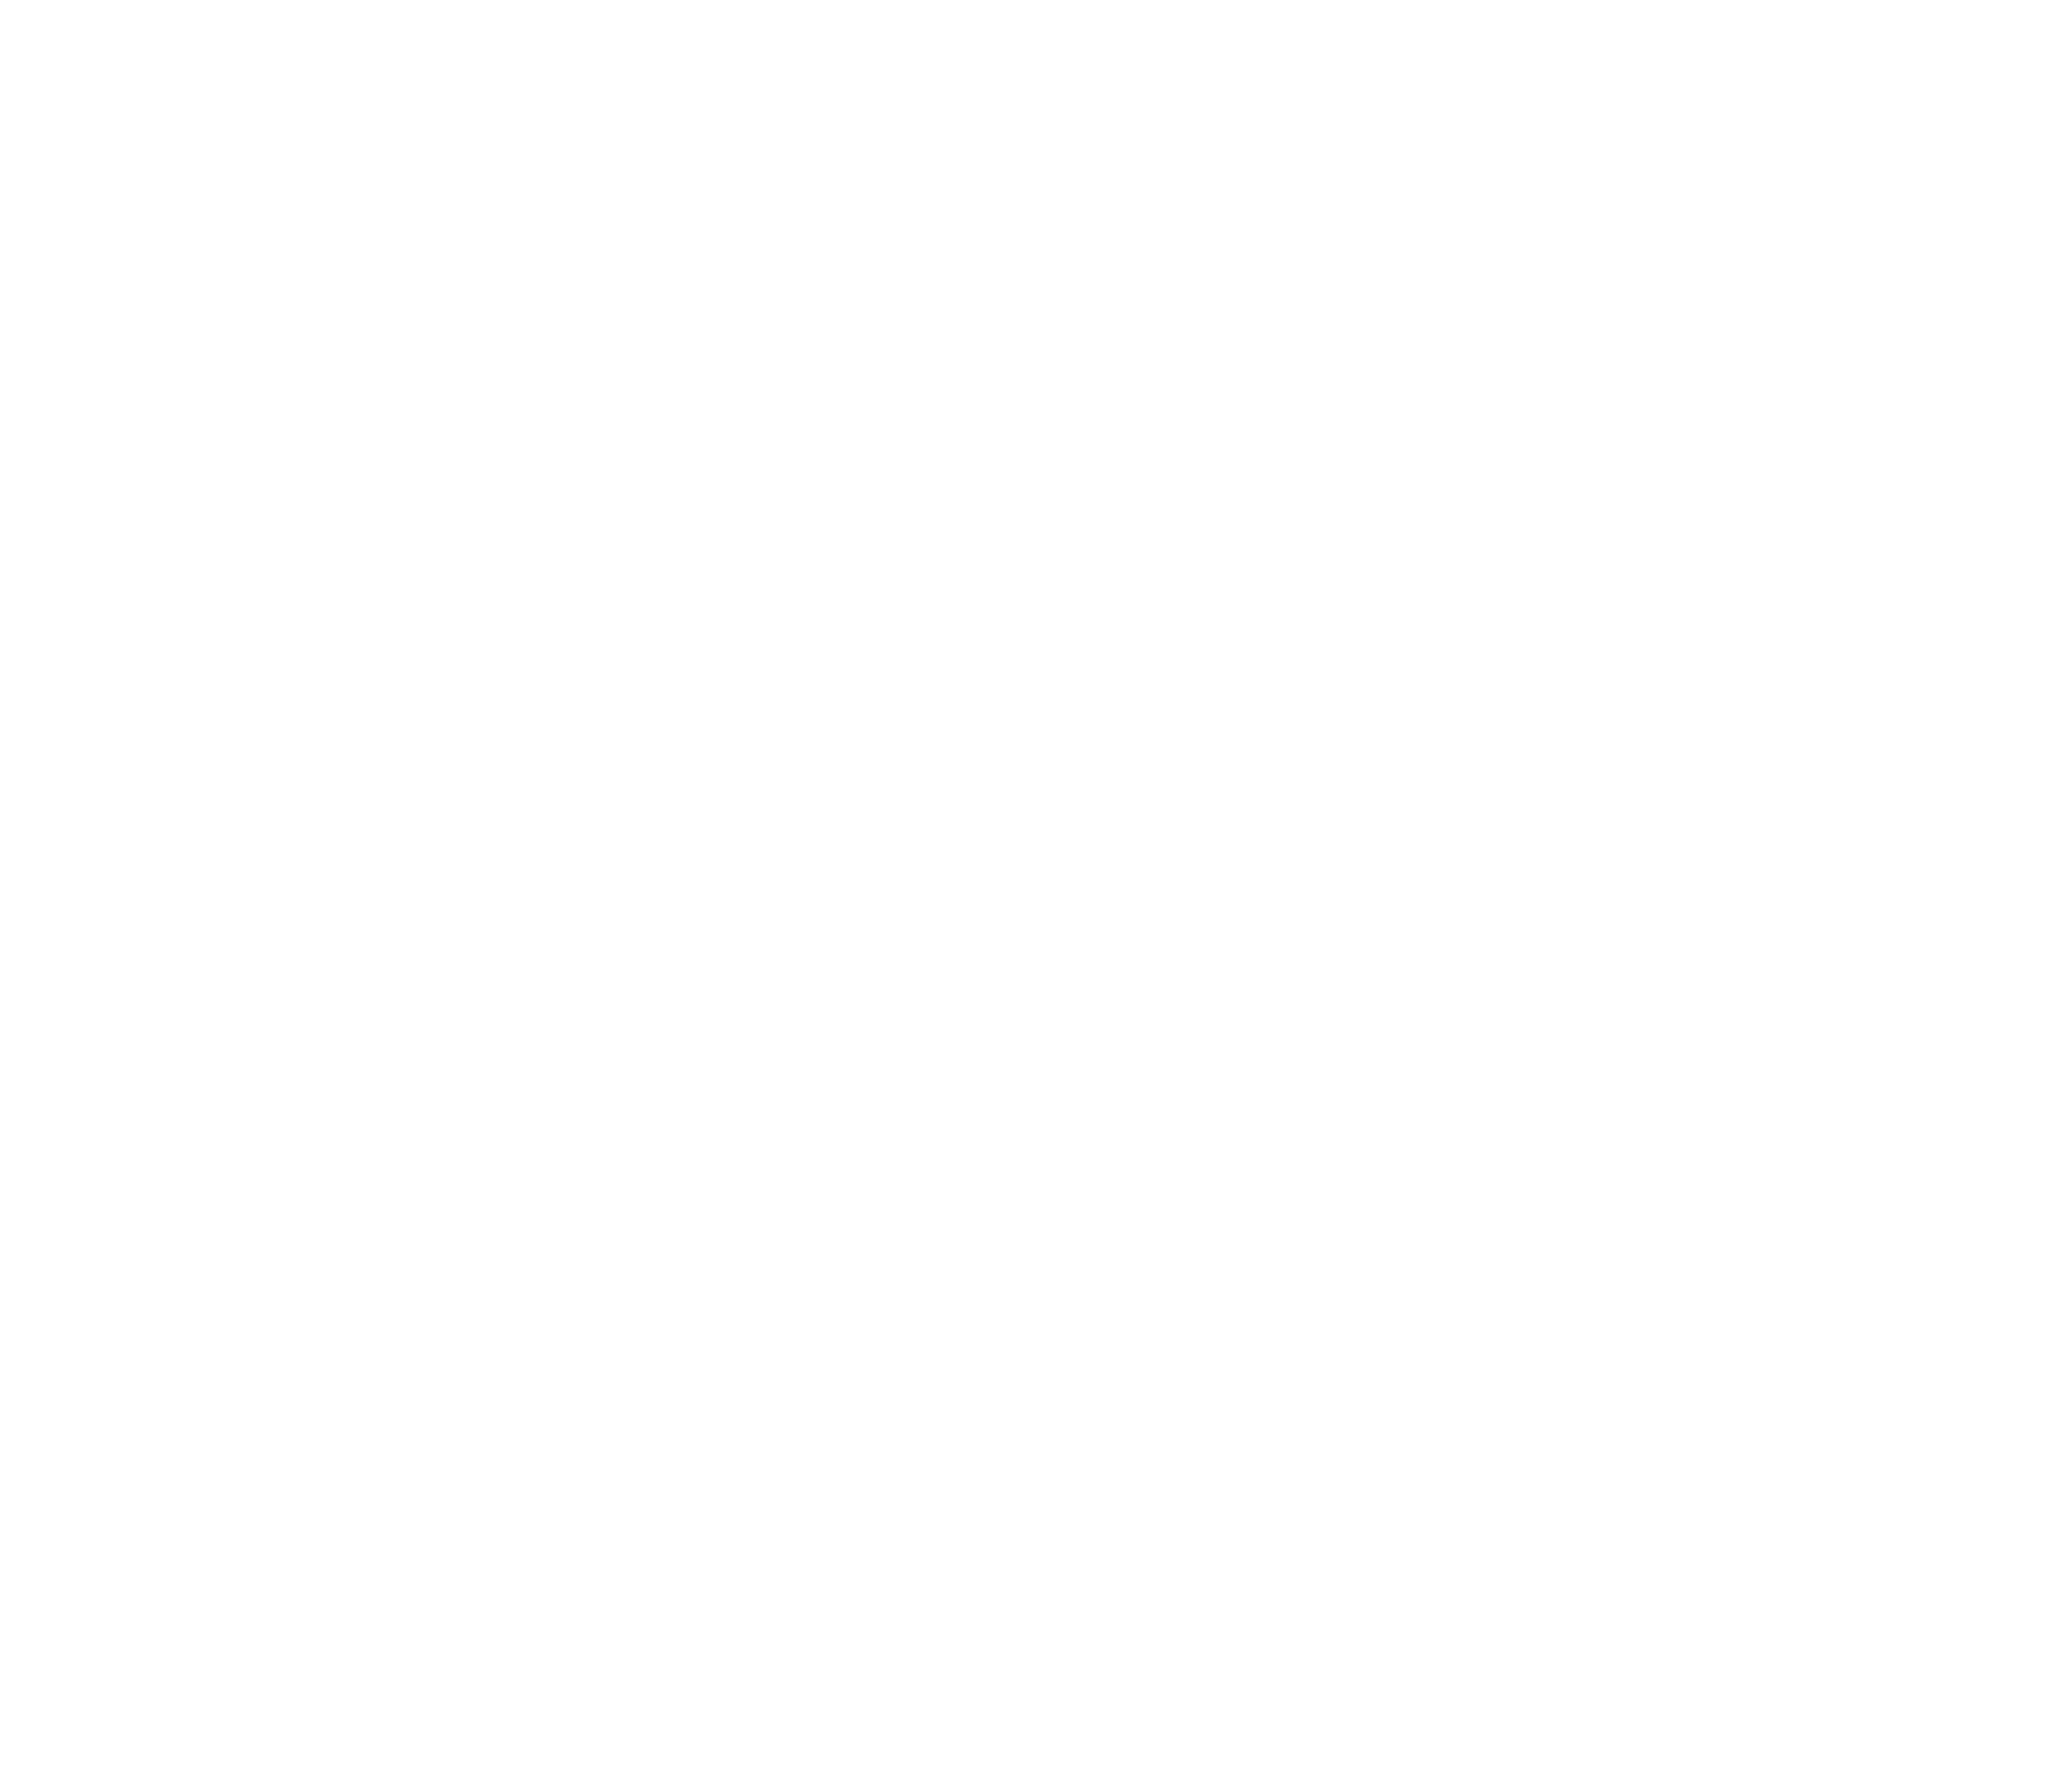 BASES DEL SALÓN PROVINCIAL DE ARTES PLÁSTICAS 2021